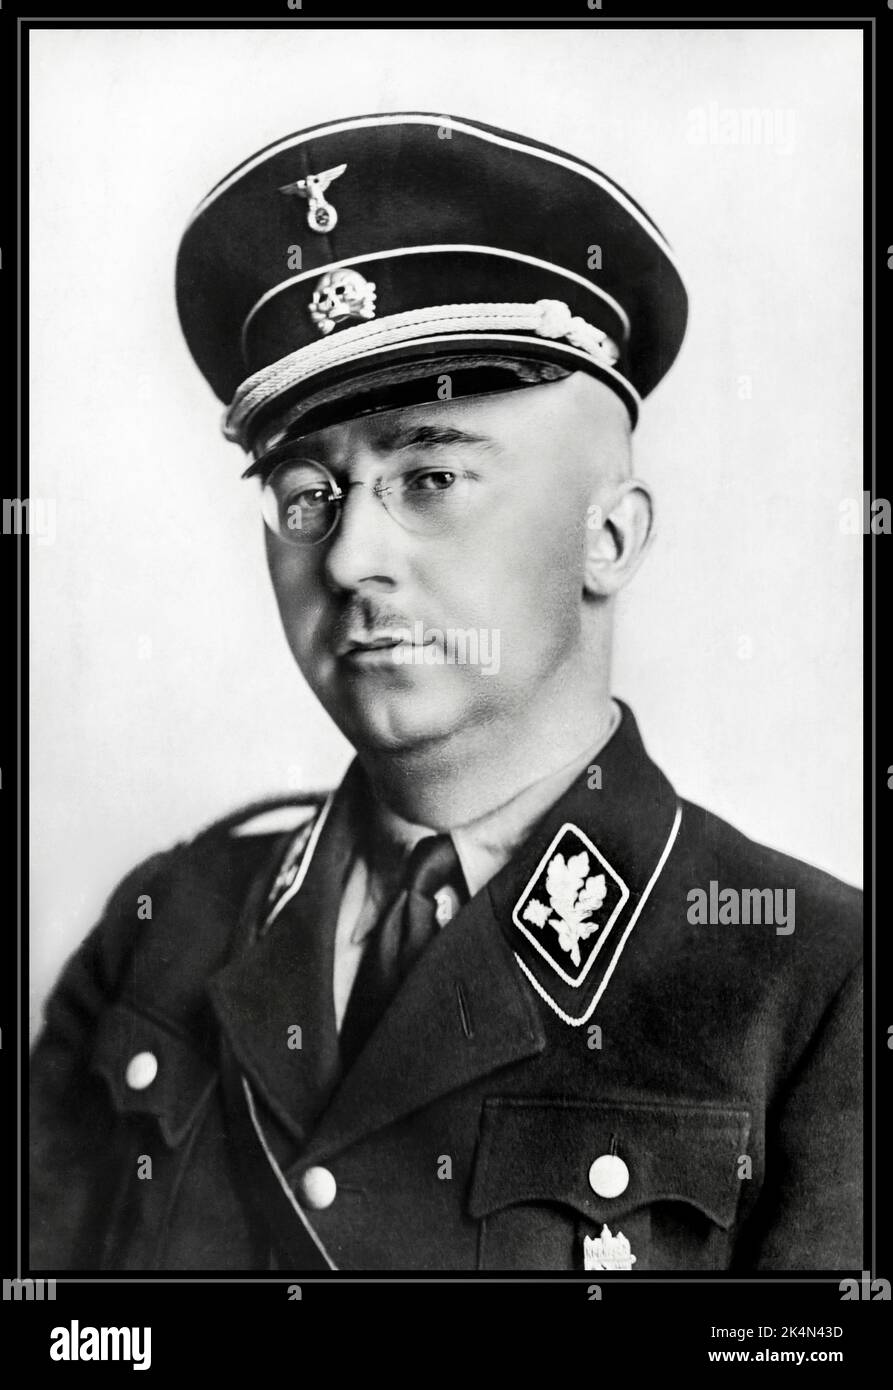 Ritratto ufficiale HIMMLER in uniforme SS. 1938 Heinrich Luitpold Himmler era Reichsführer dello Schutzstaffel e un membro di spicco del partito nazista di Germania. Himmler era uno degli uomini più potenti della Germania nazista e un architetto principale dell'Olocausto.1940's WW2 Heinrich politico nazionalsocialista tedesco comandante militare nazista polizia segreta. Himmler era uno degli uomini più potenti della Germania nazista e uno dei più direttamente responsabili dell'Olocausto. Ha facilitato il genocidio in Europa e nell'est. Suicidio commesso nel 1945 Foto Stock